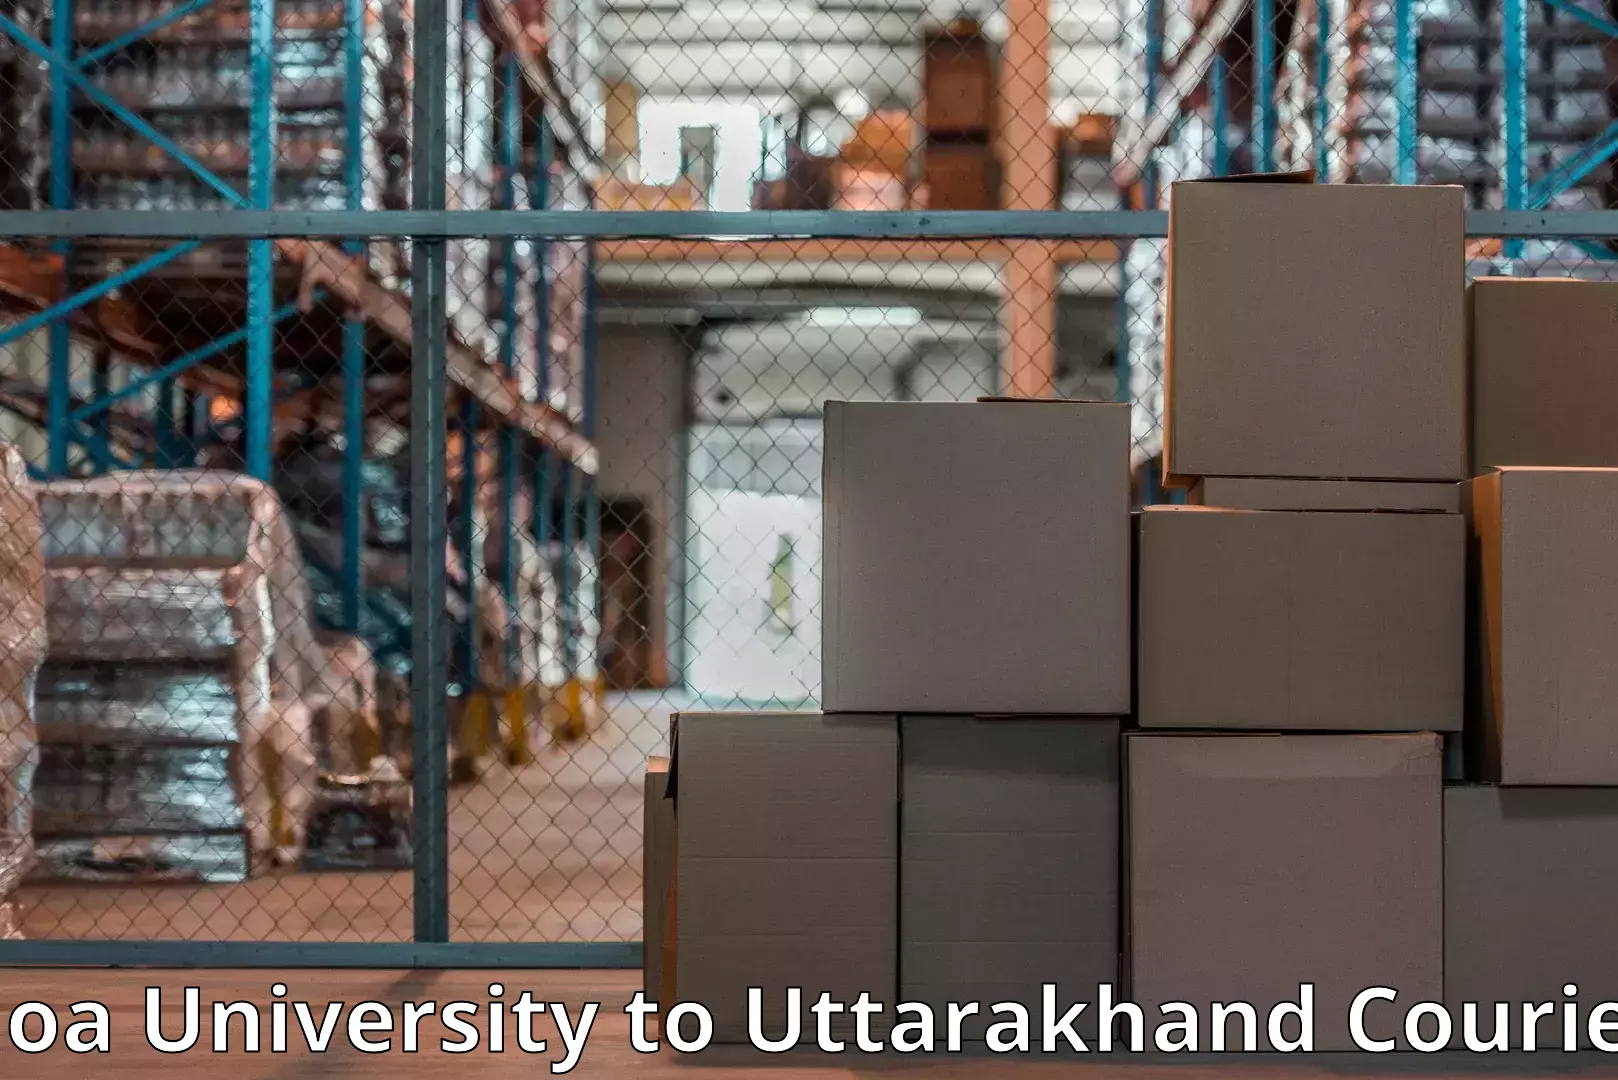 Dependable furniture transport Goa University to Rishikesh